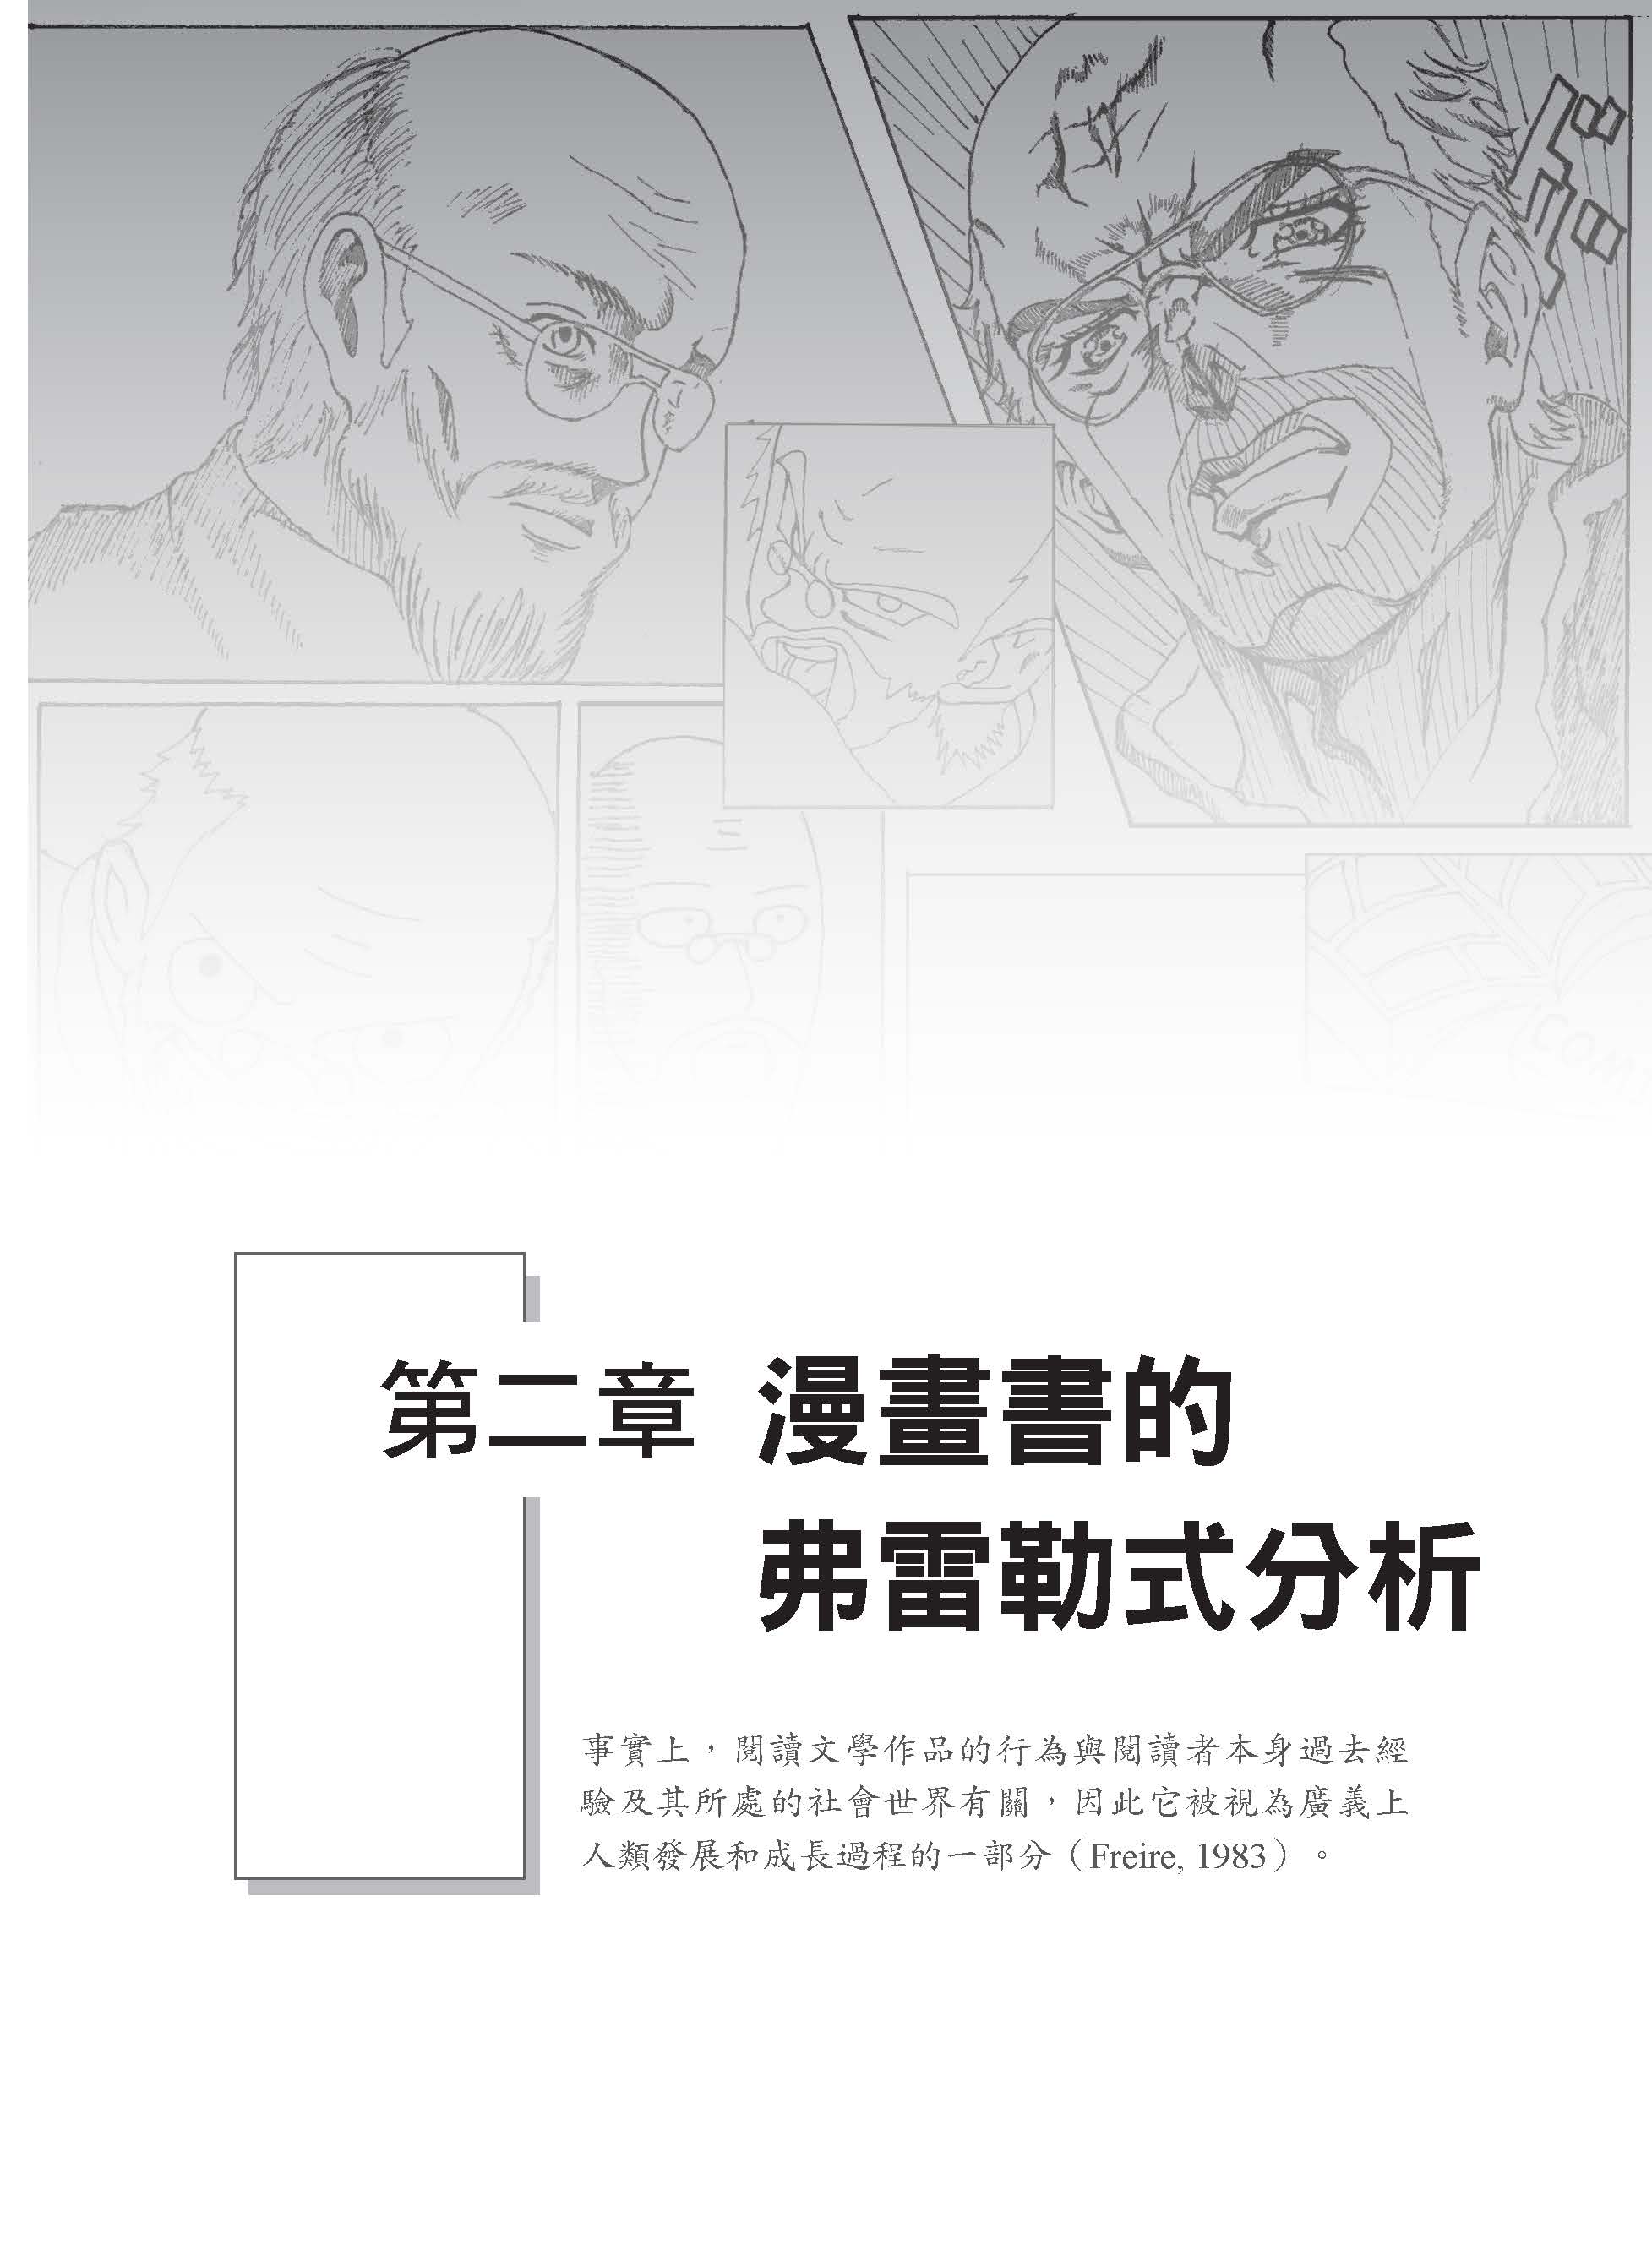 用批判的角度閱讀漫畫書：以弗雷勒理論探討臺灣中學生如何受日系漫畫影響